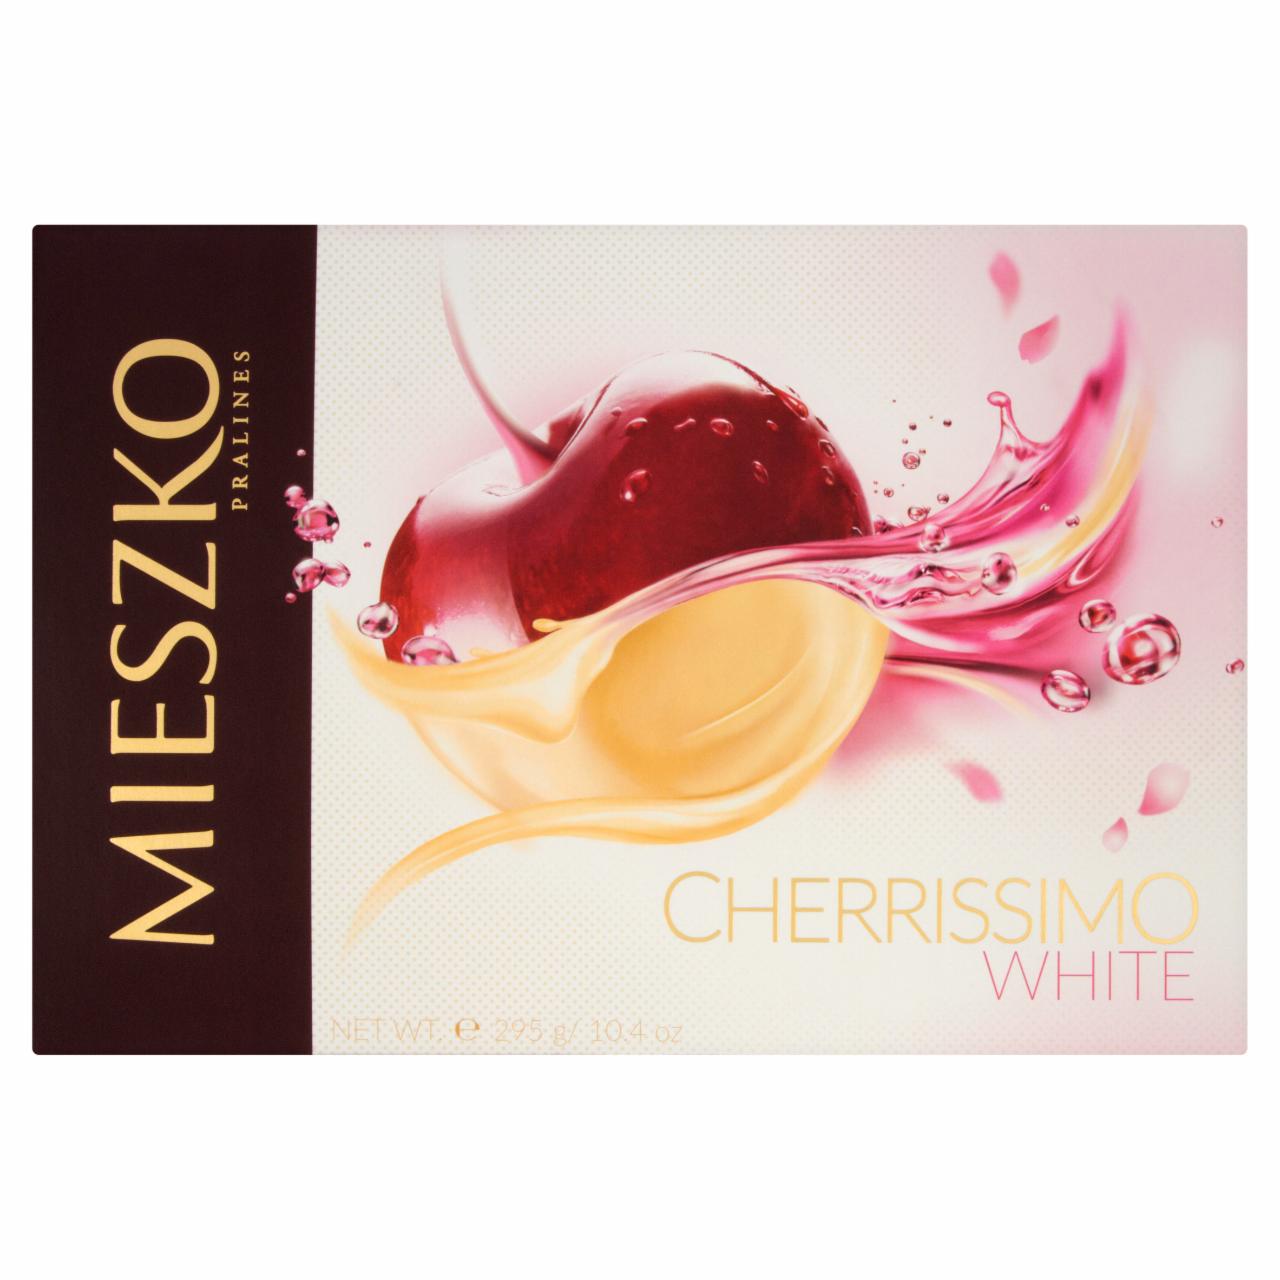 Zdjęcia - Mieszko Cherrissimo White Czekoladki nadziewane wiśnie w alkoholu 295 g